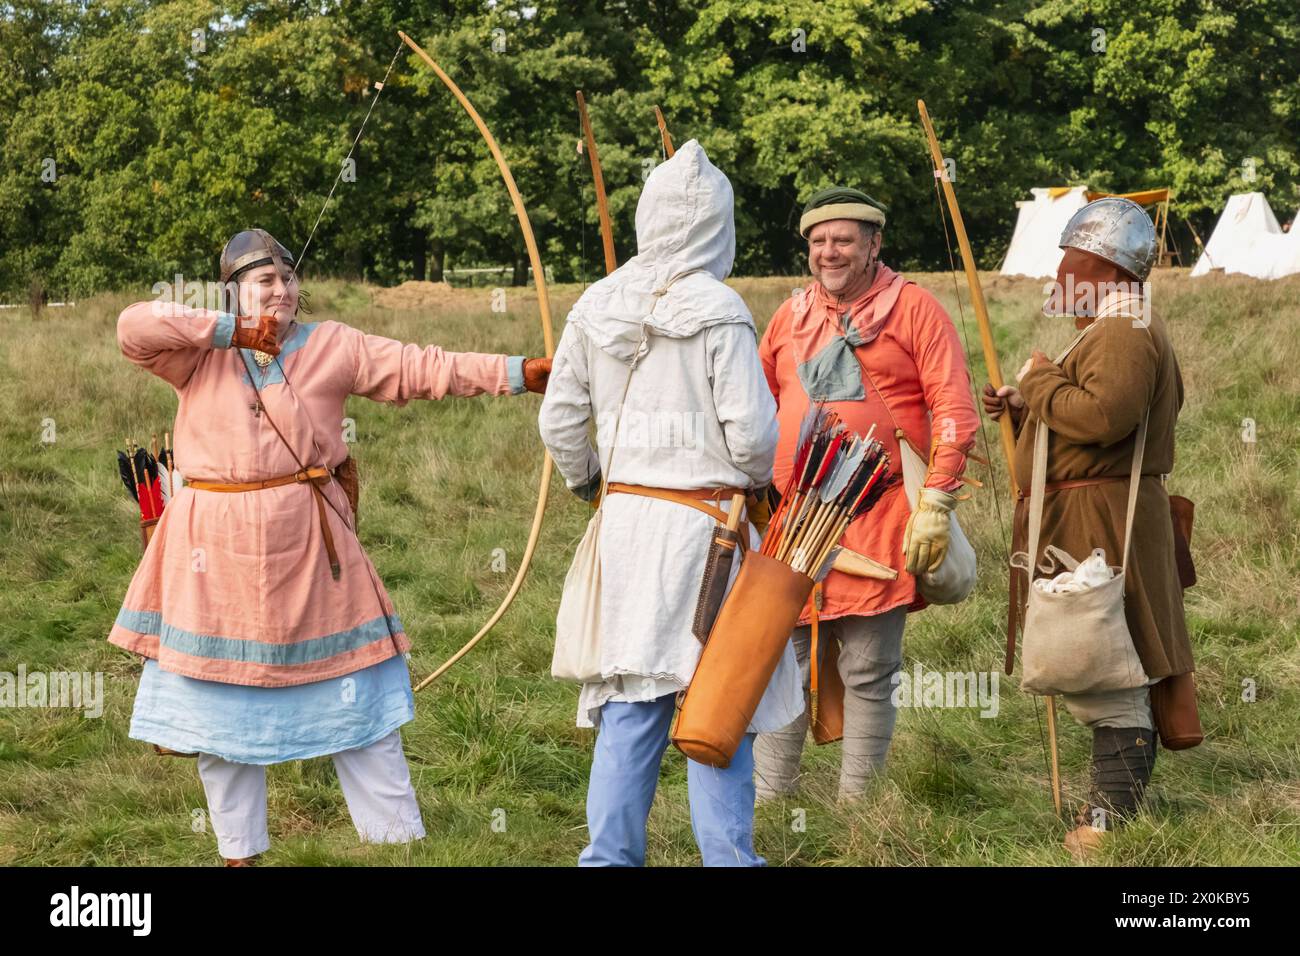 Angleterre, East Sussex, bataille, festival annuel de reconstitution de la bataille d'Hastings en octobre, groupe d'Archers habillés en costume médiéval Banque D'Images